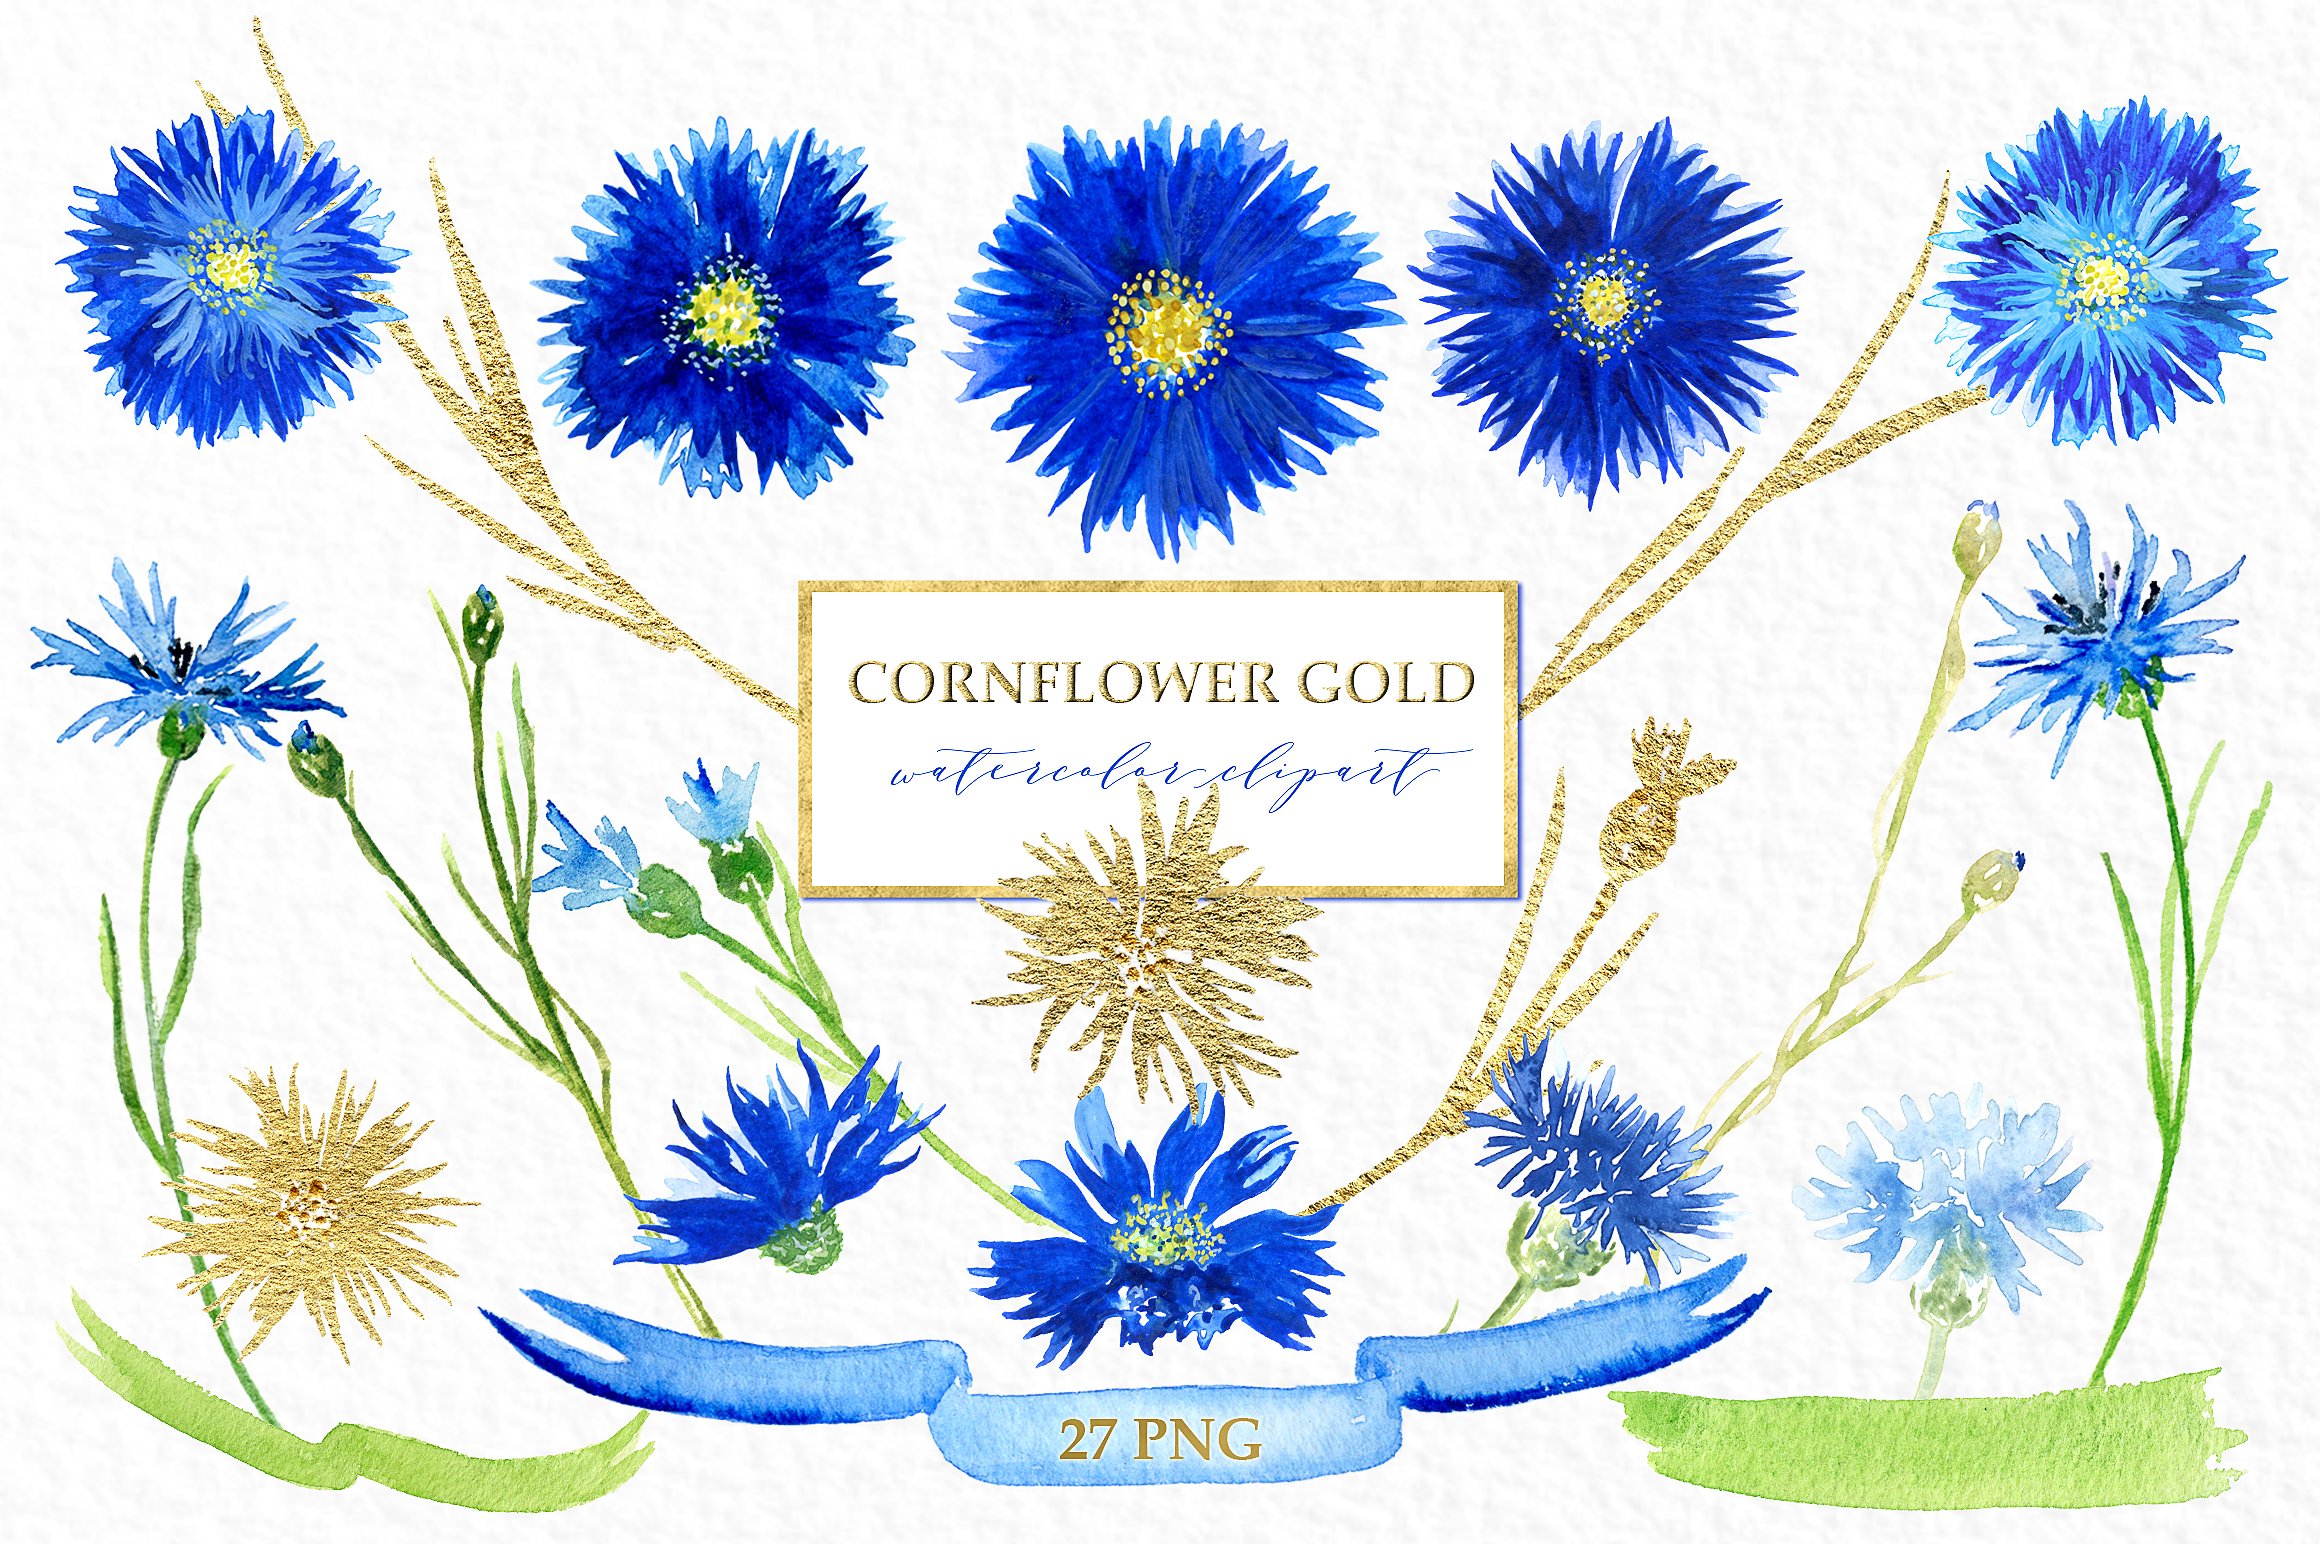 矢车菊金色水彩画素材 Cornflowers gold. W